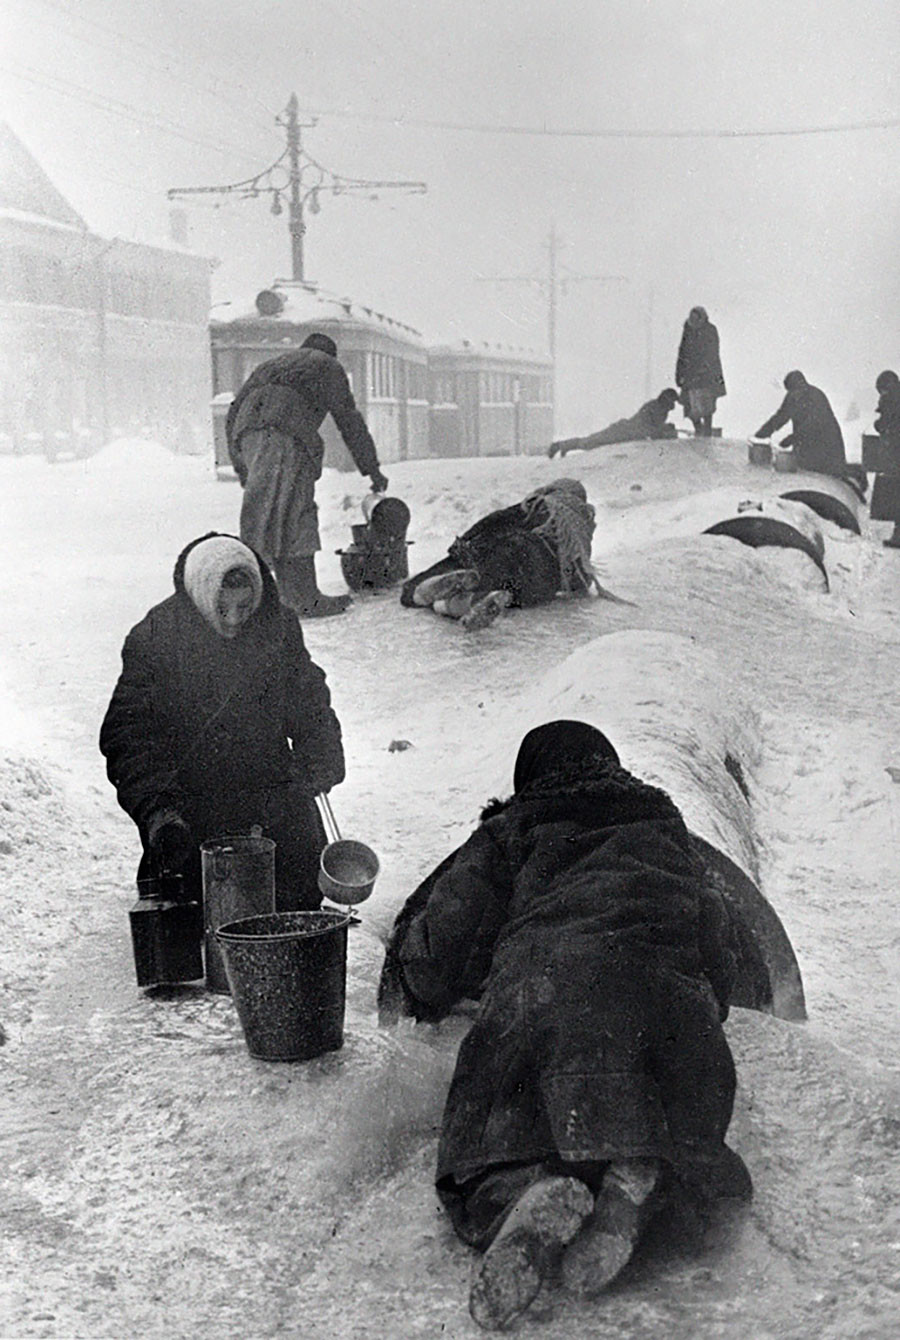 Habitantes de la asediada Leningrado sacan agua de una tubería rota en calles heladas, enero de 1942.

